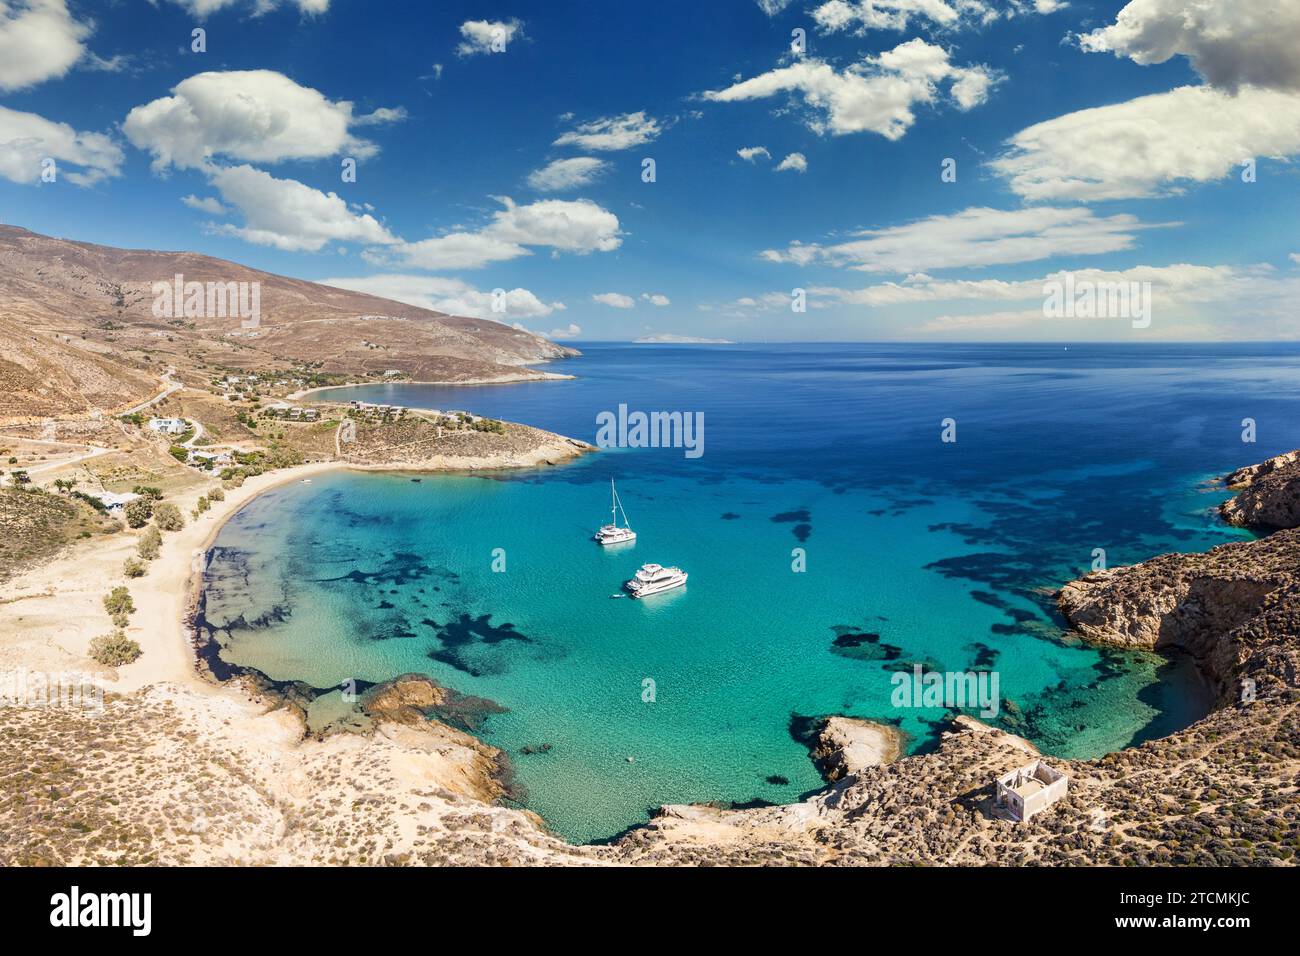 La plage Psili Ammos de l'île de Serifos dans les Cyclades, Grèce Banque D'Images